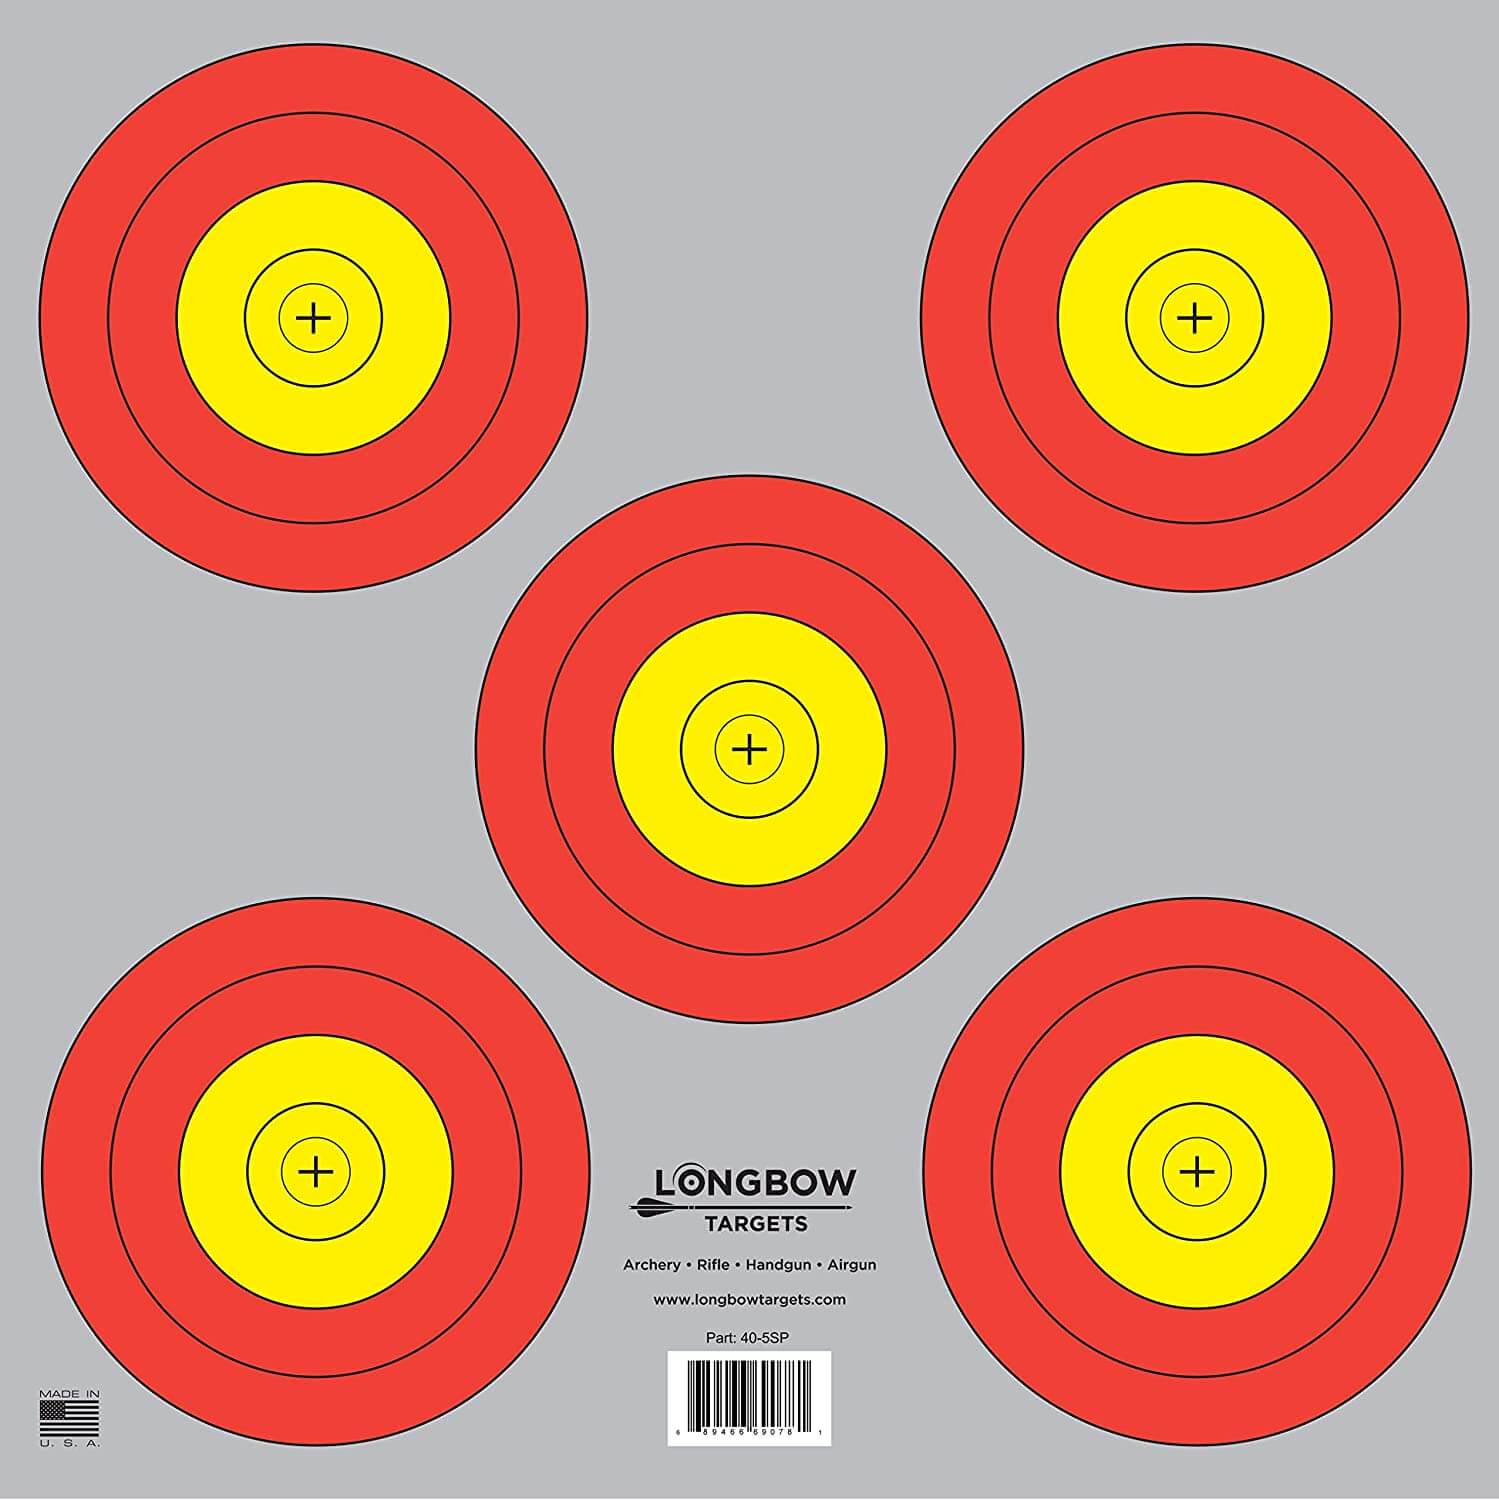 Archery 5 SPOT & 3 SPOT Vegas Targets